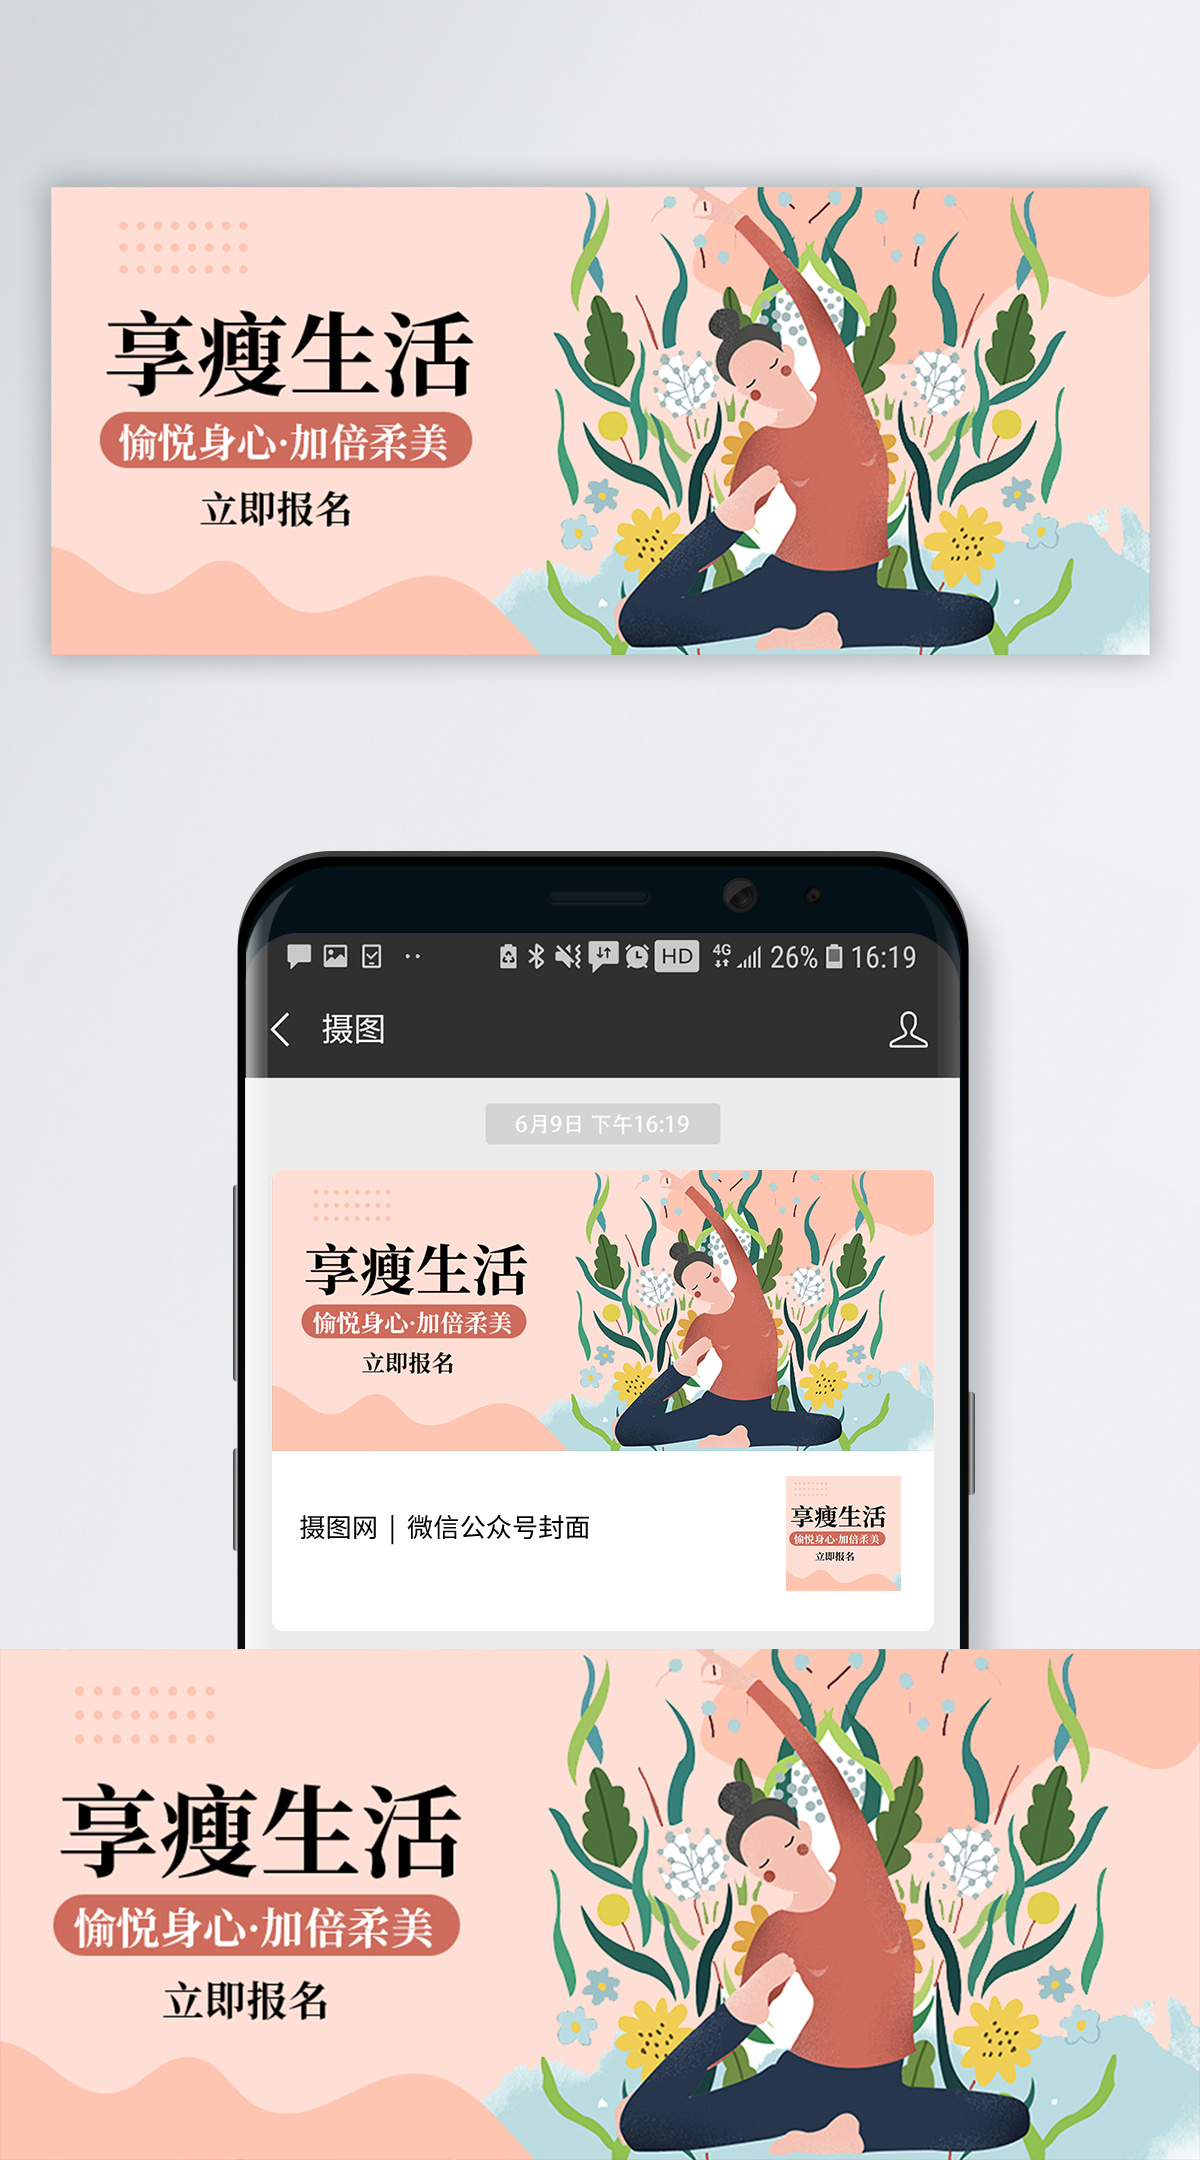 白蓝色照片个人分享中文微信朋友圈封面 - 模板 - Canva可画